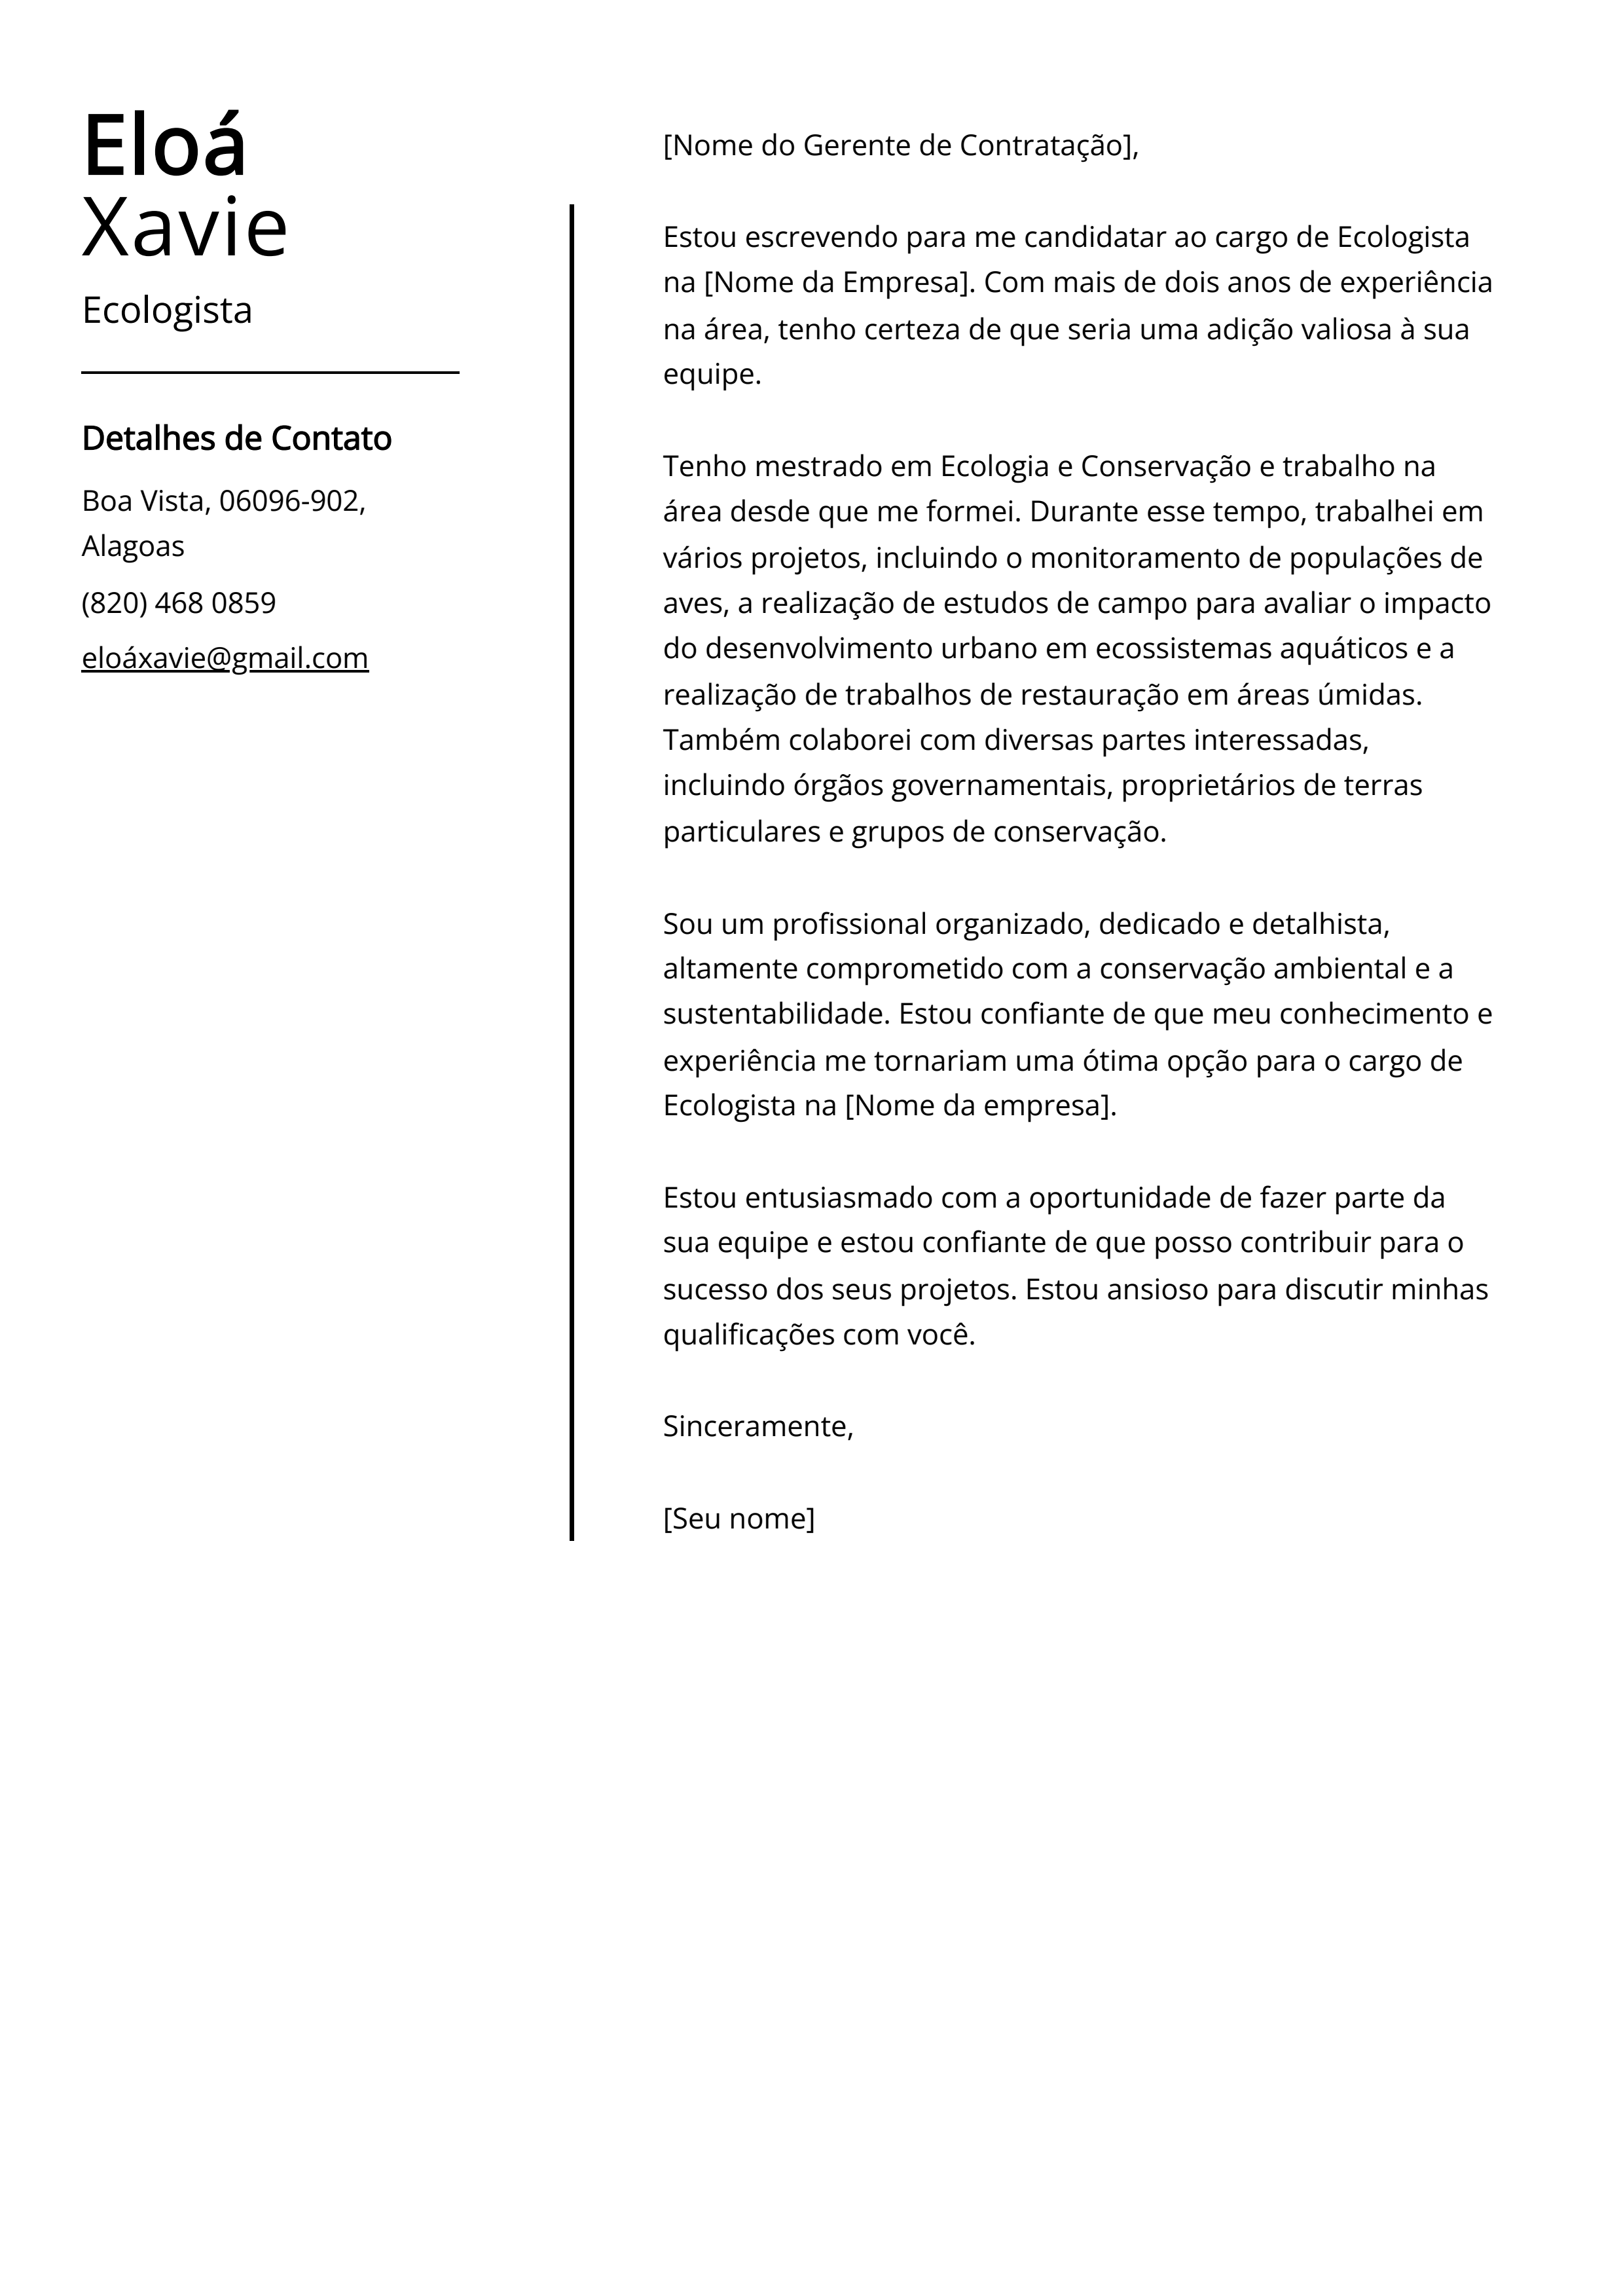 Exemplo de carta de apresentação de Ecologista.